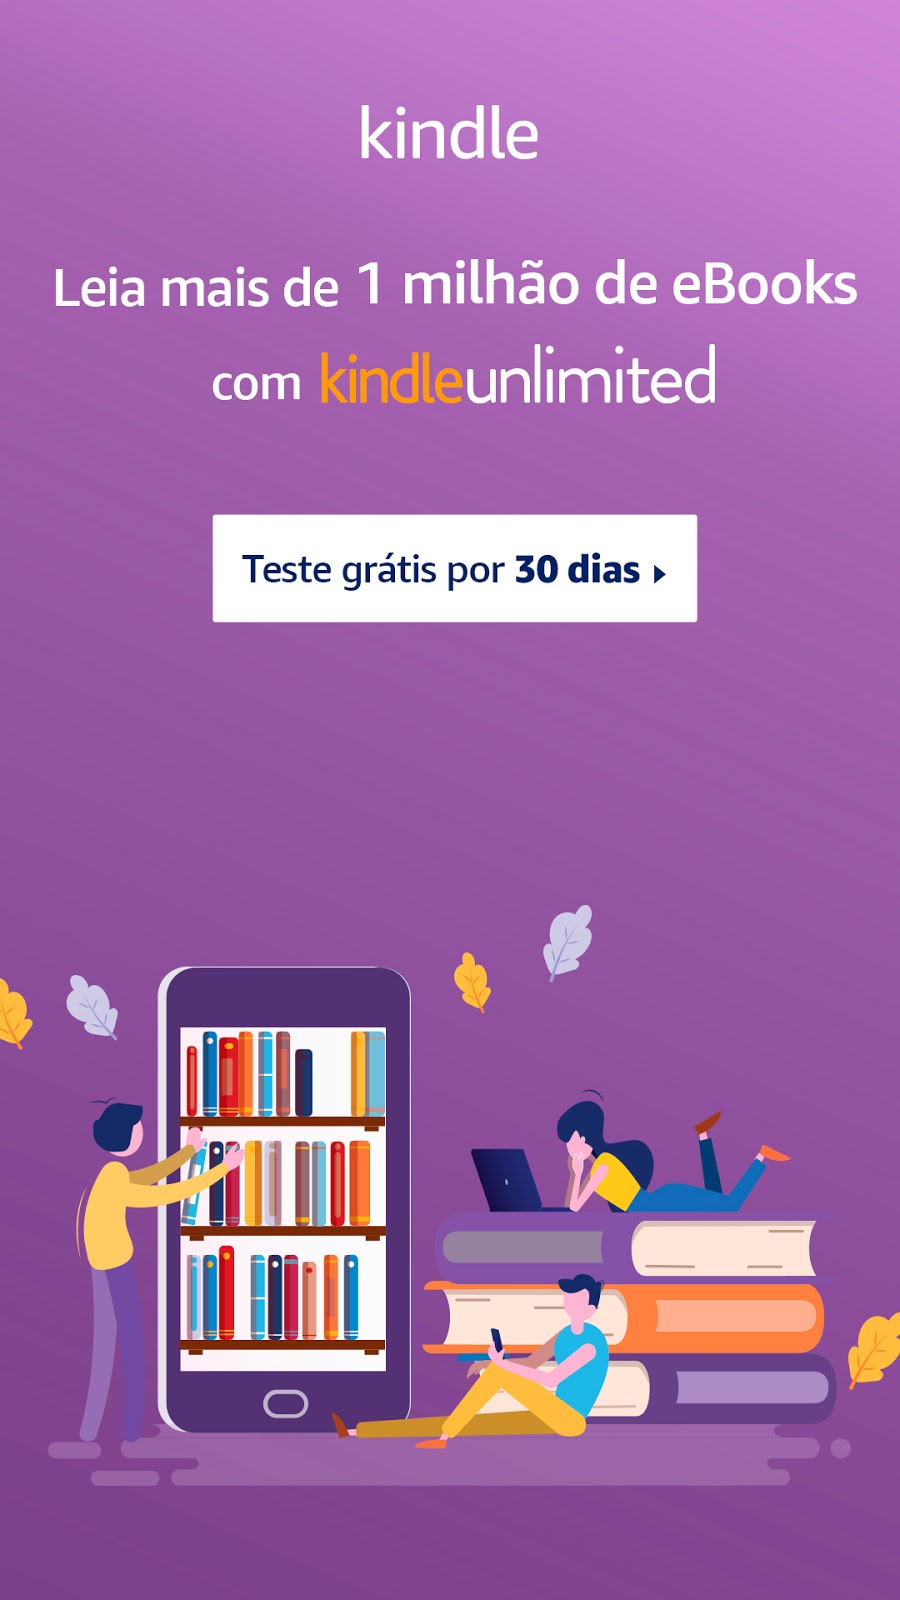 Milhares de livros disponíveis no Kindle Unlimited! Teste grátis por 30 dias.